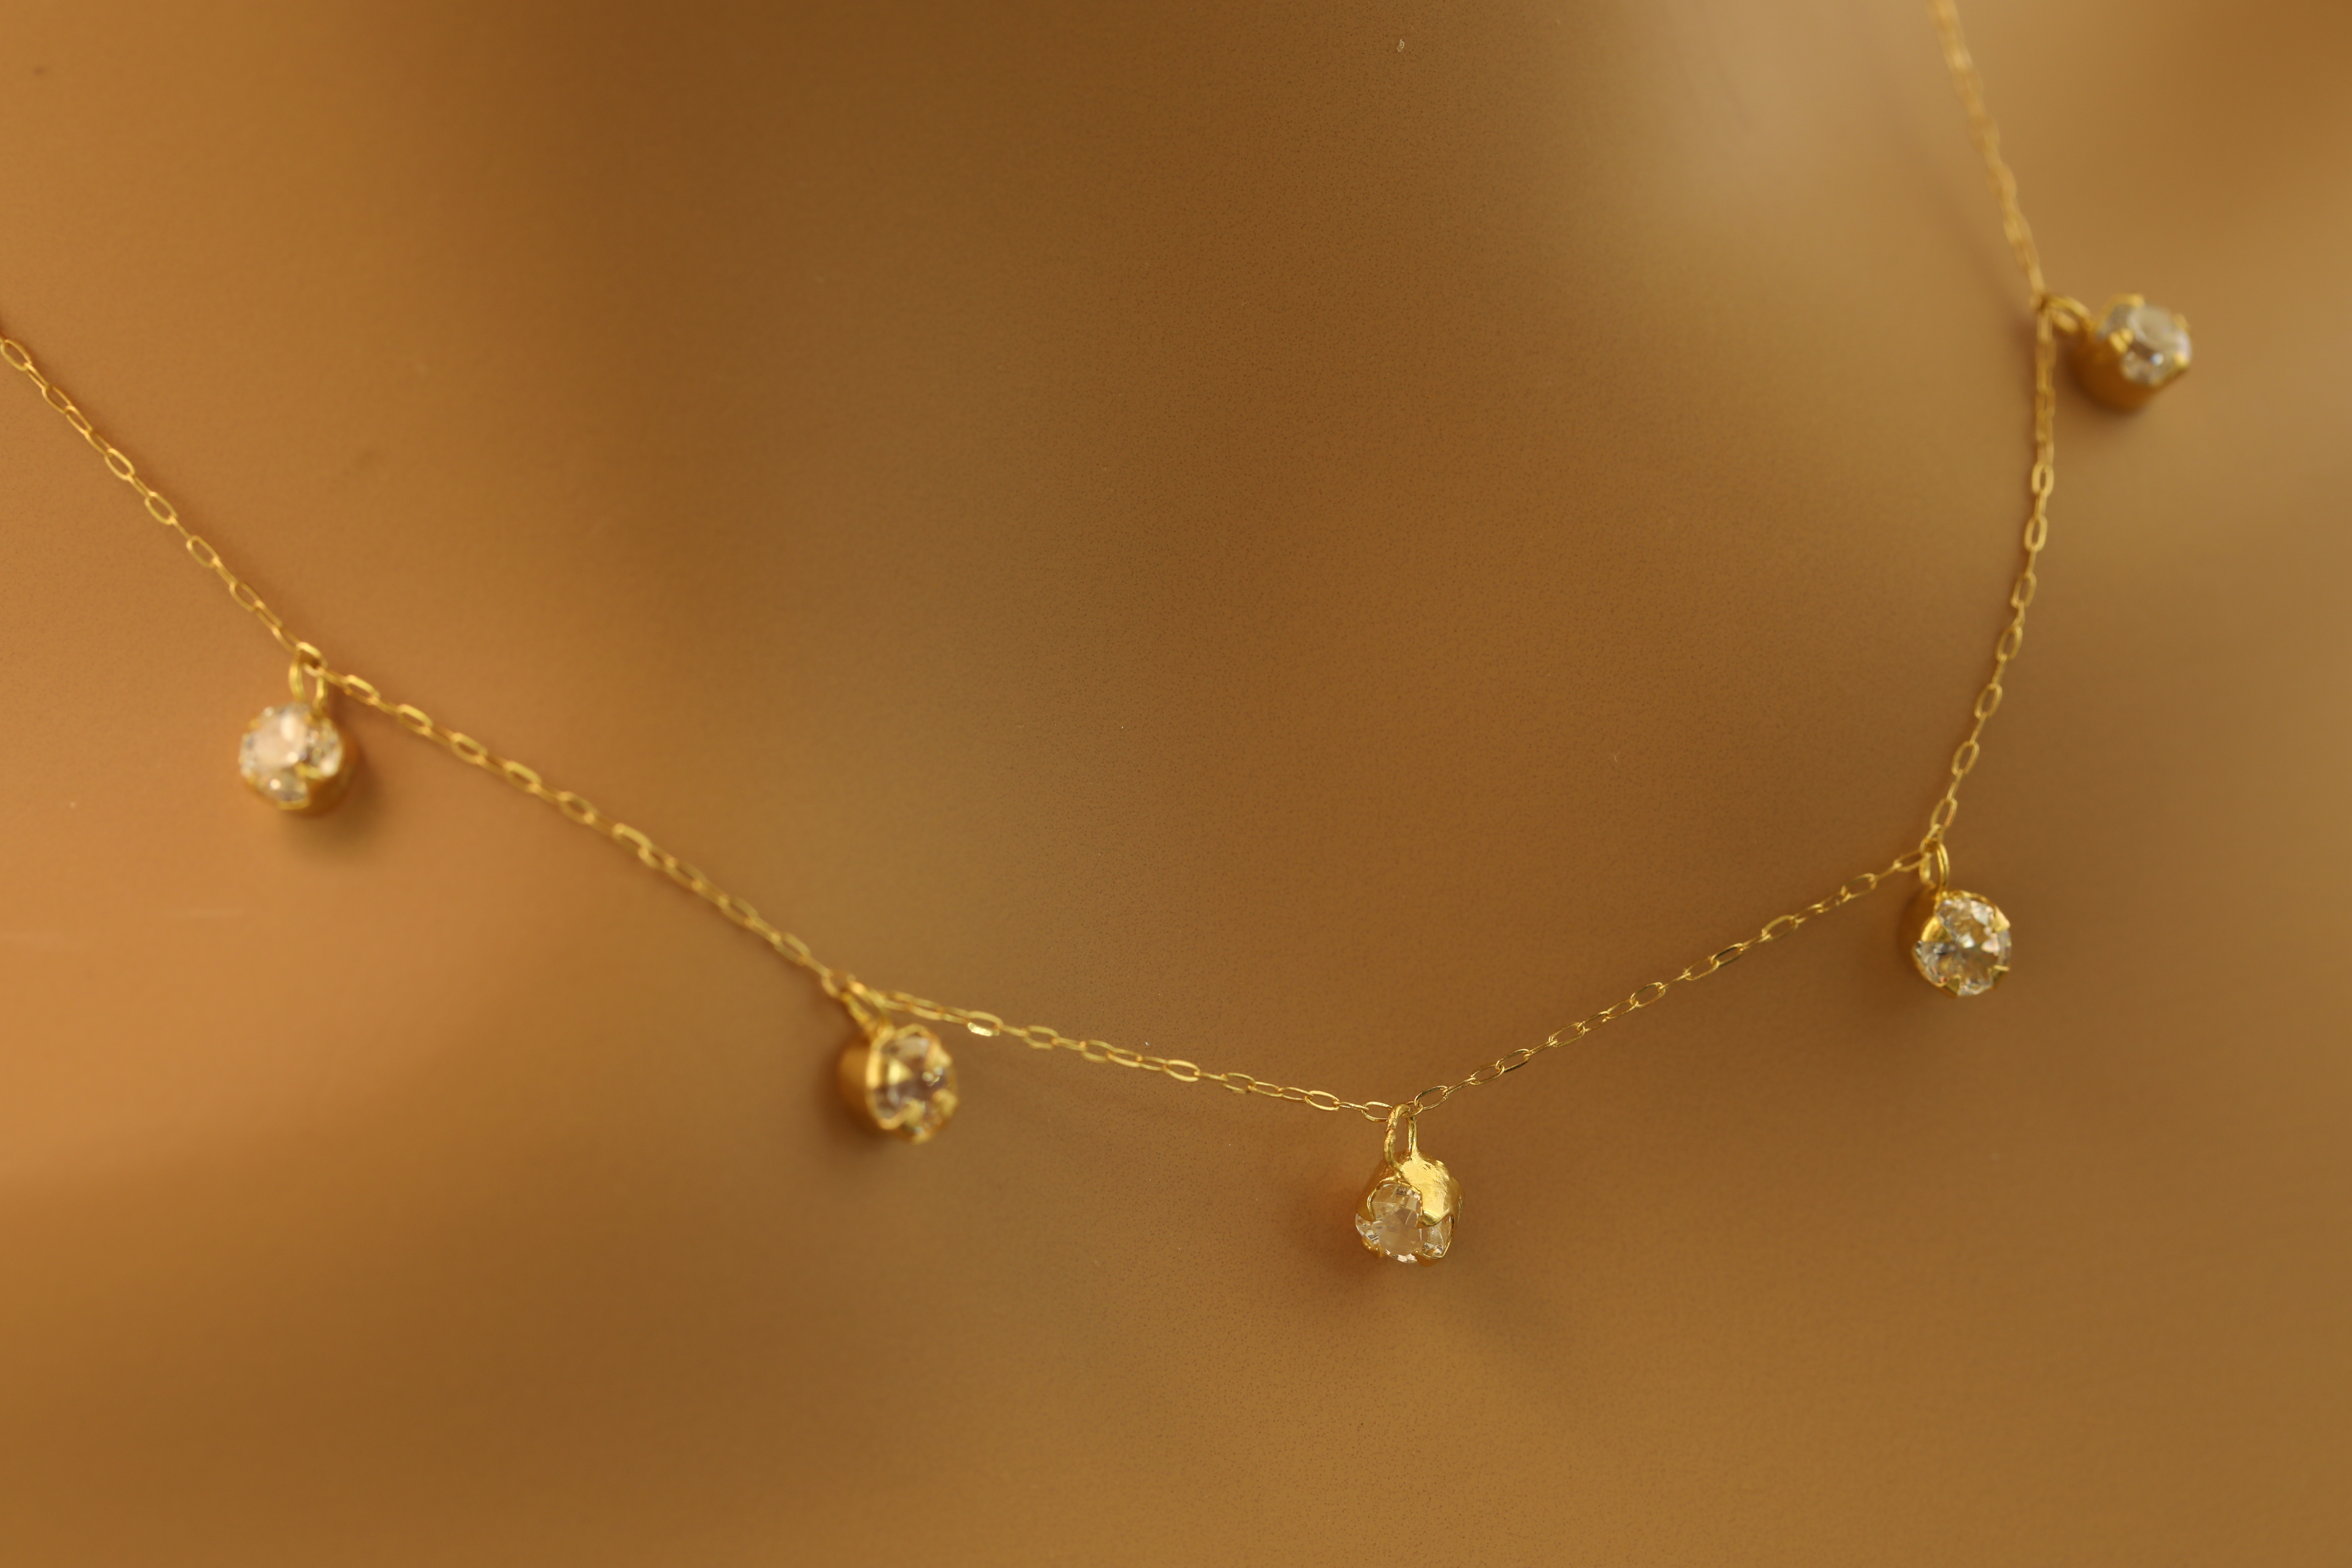 تشوكر ذهب اصفر تصميم الماس عيار 18 الوزن ( 192 )